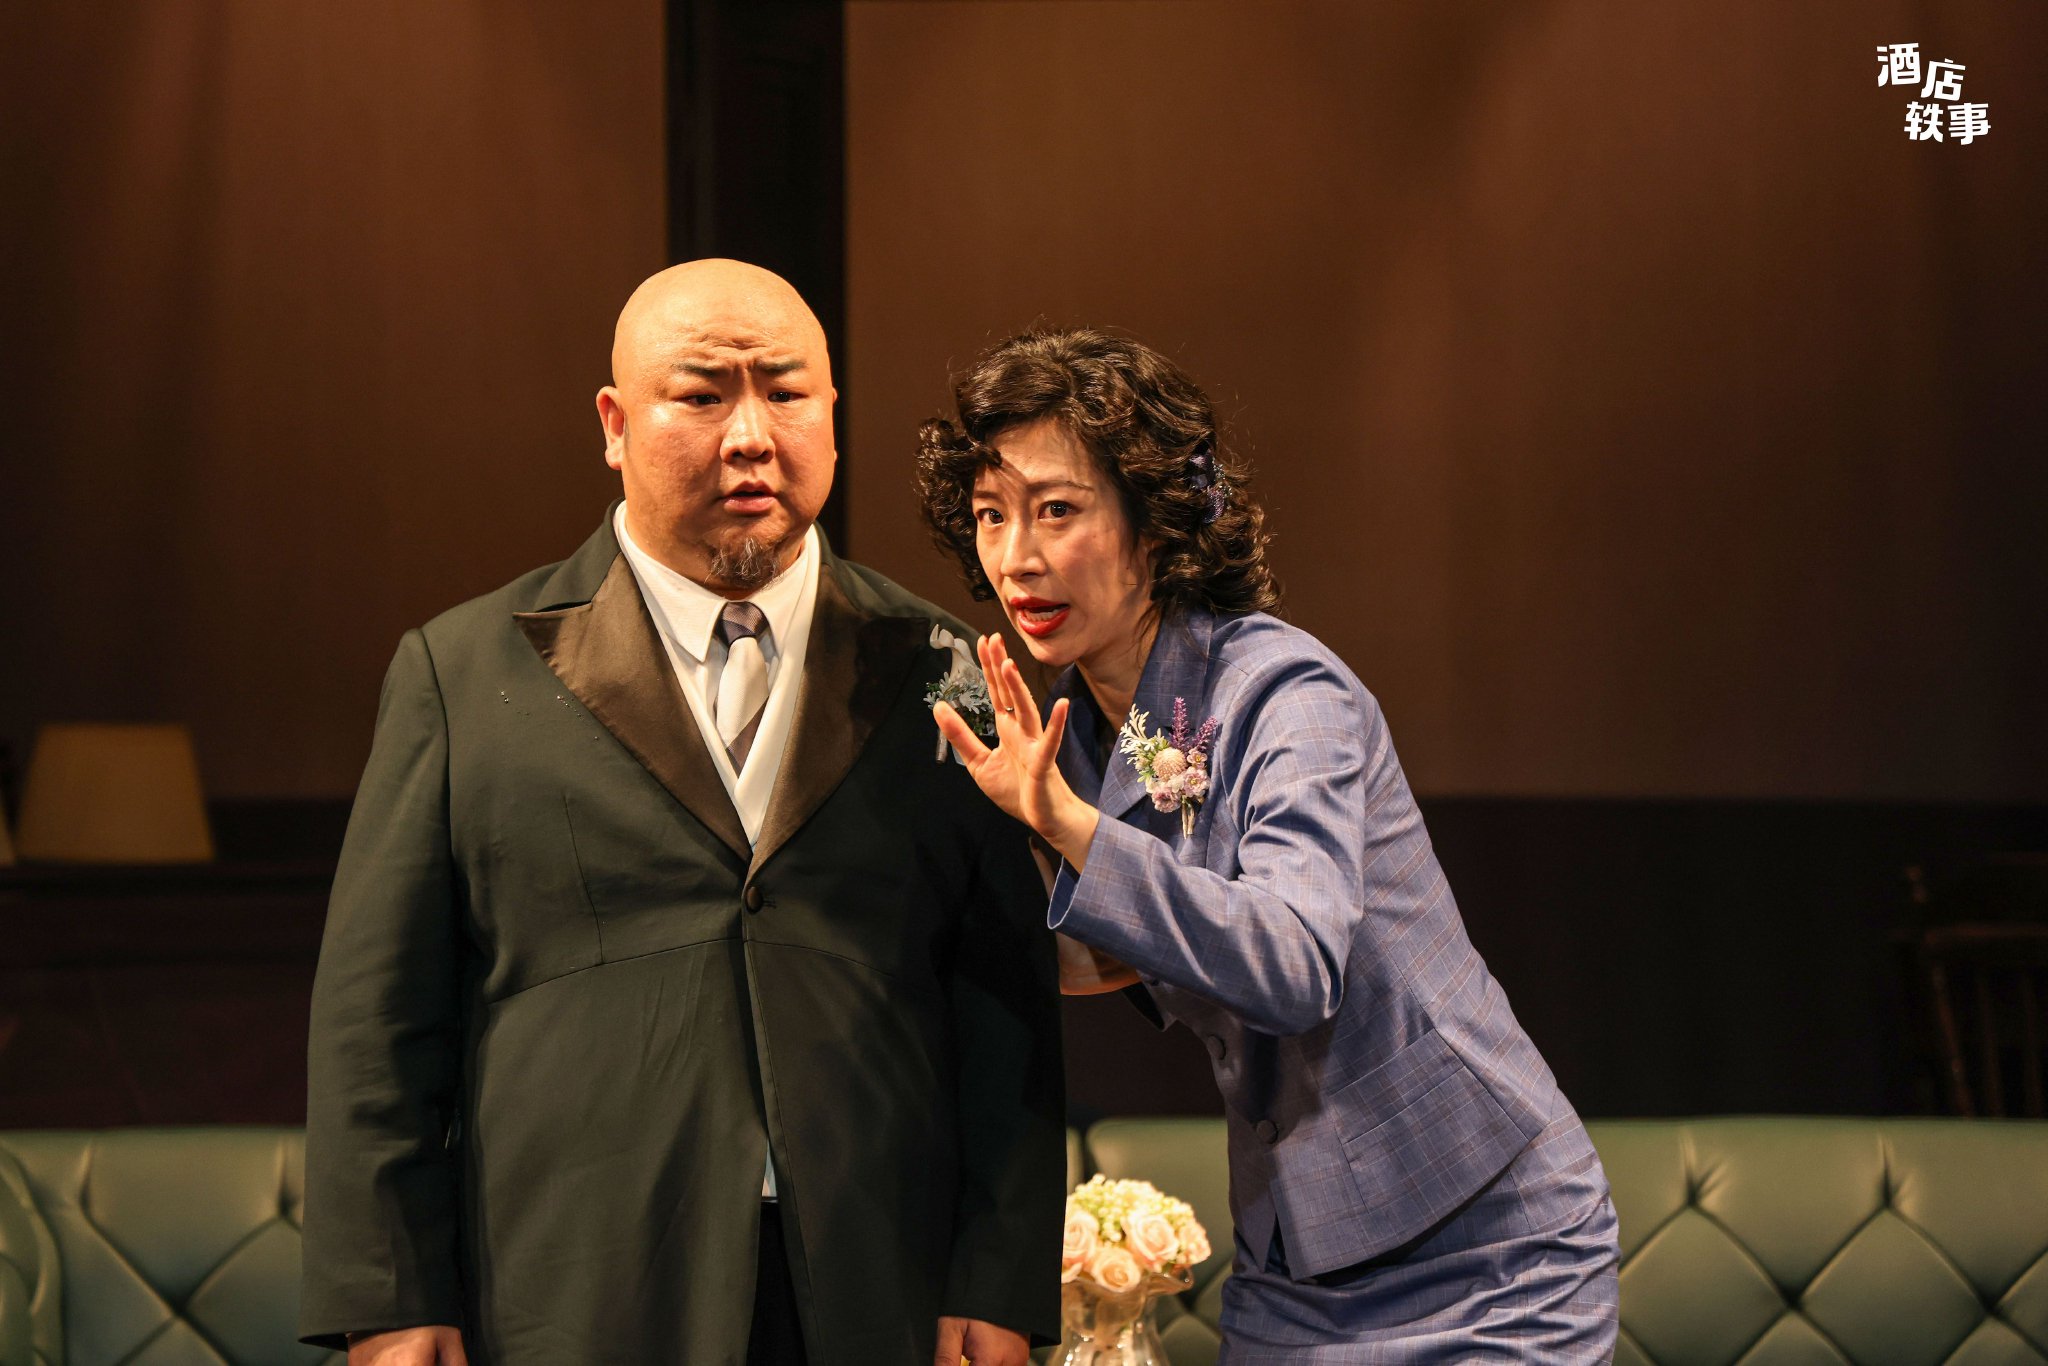 彙報演出劇目《酒店軼事》在北京人藝實驗劇場上演。 李春光 攝